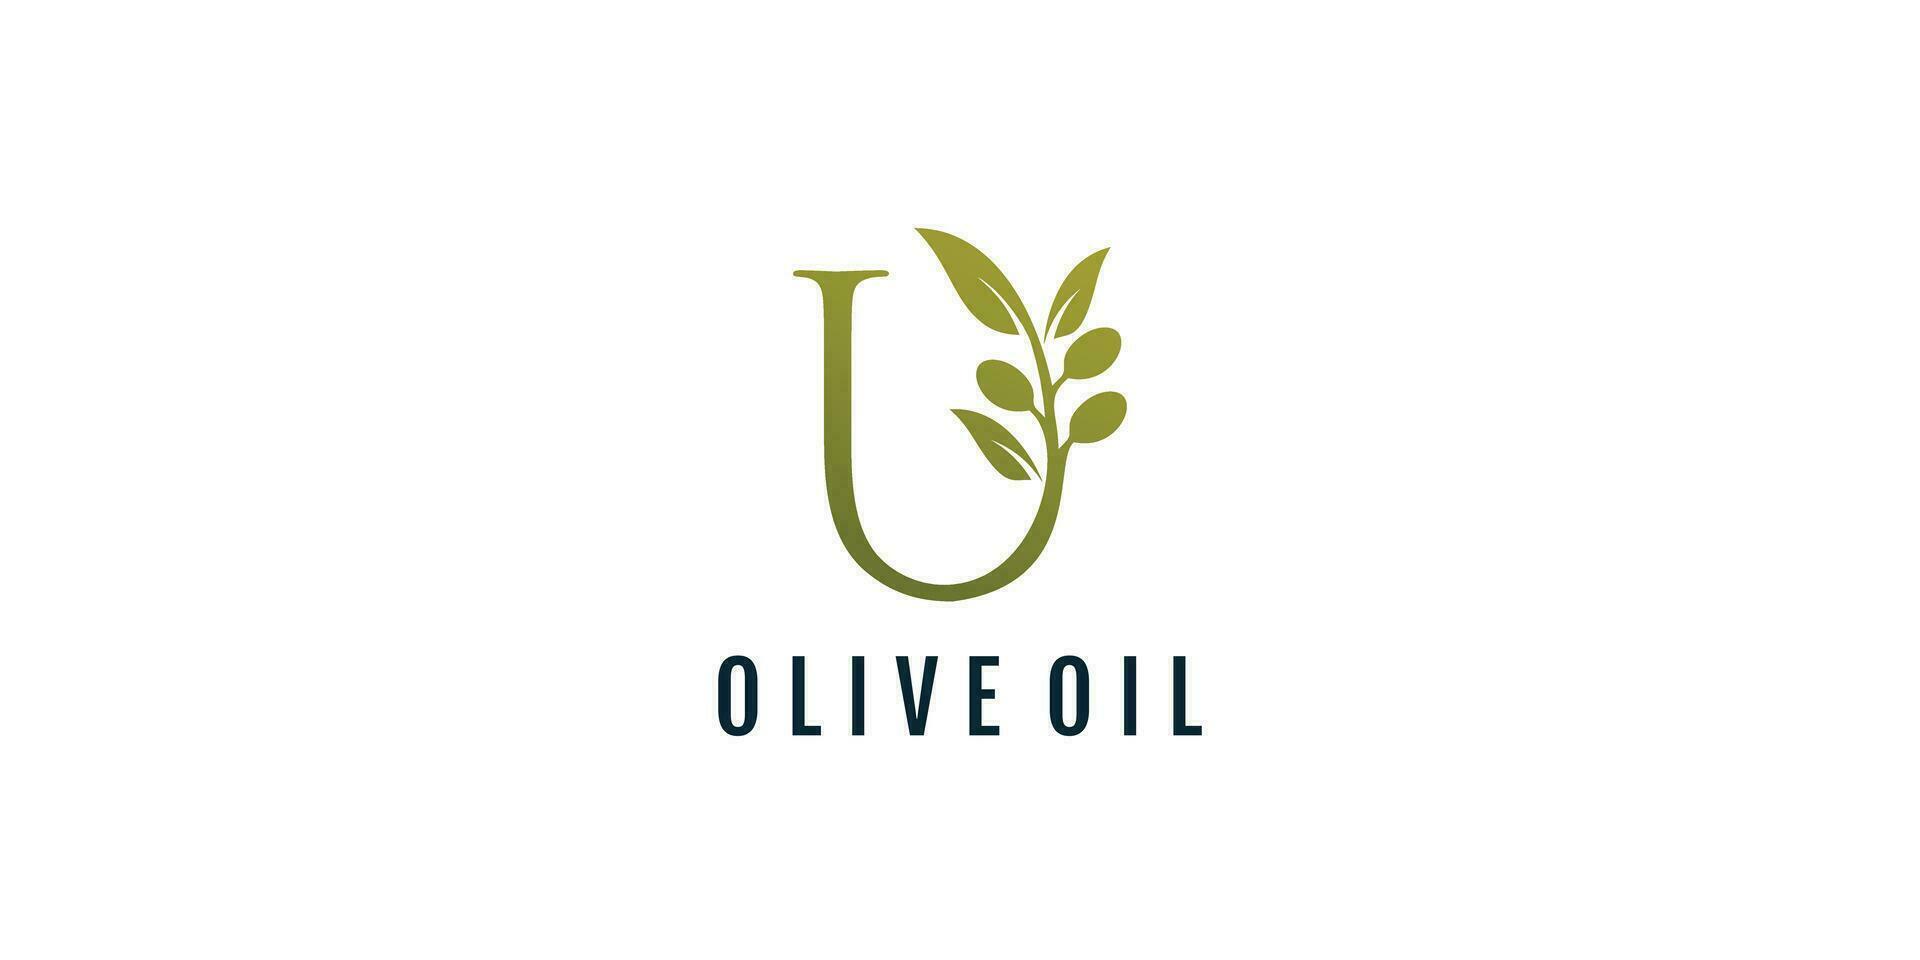 Letter U logo design element vector with olive concept